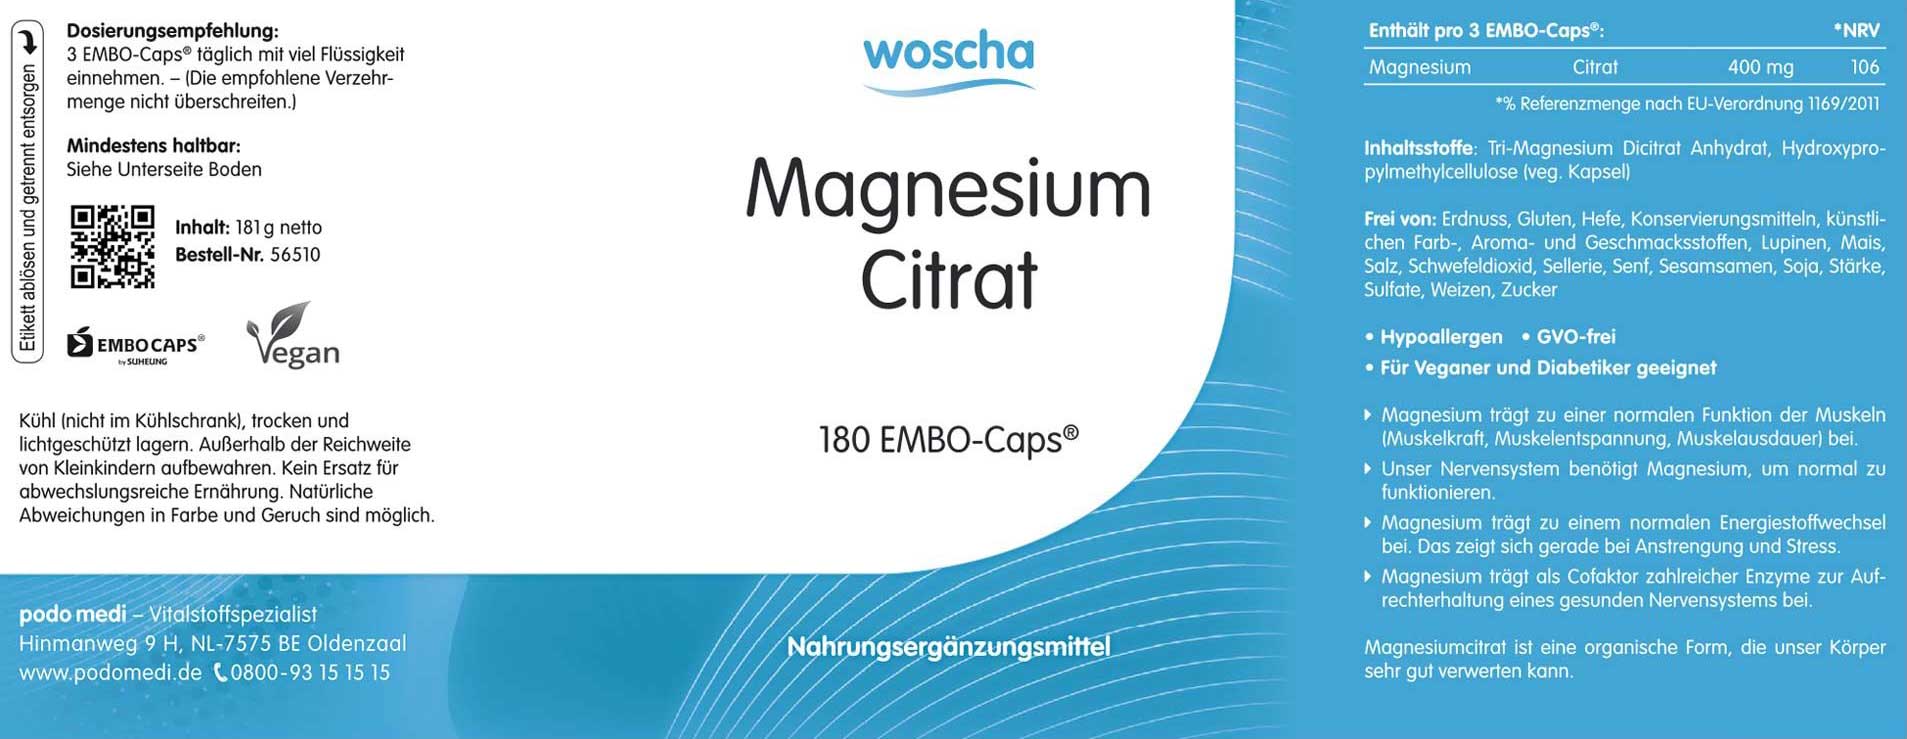 Woscha Magnesium Citrat von podo medi beinhaltet 180 Kapseln Etikett